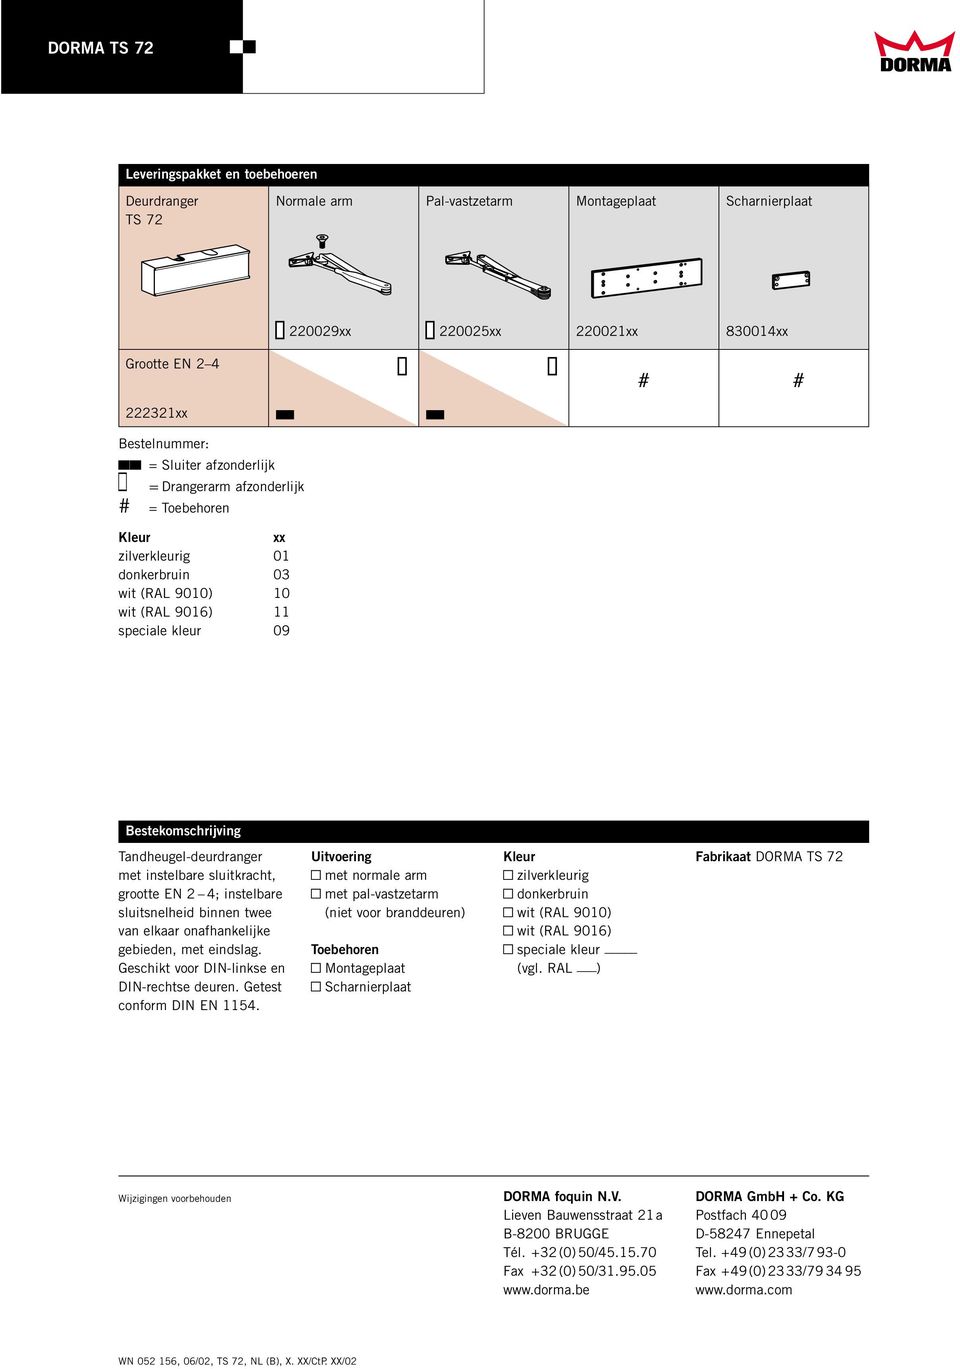 Tandheugel-deurdranger met instelbare sluitkracht, grootte EN 2 4; instelbare sluitsnelheid binnen twee van elkaar onafhankelijke gebieden, met eindslag.